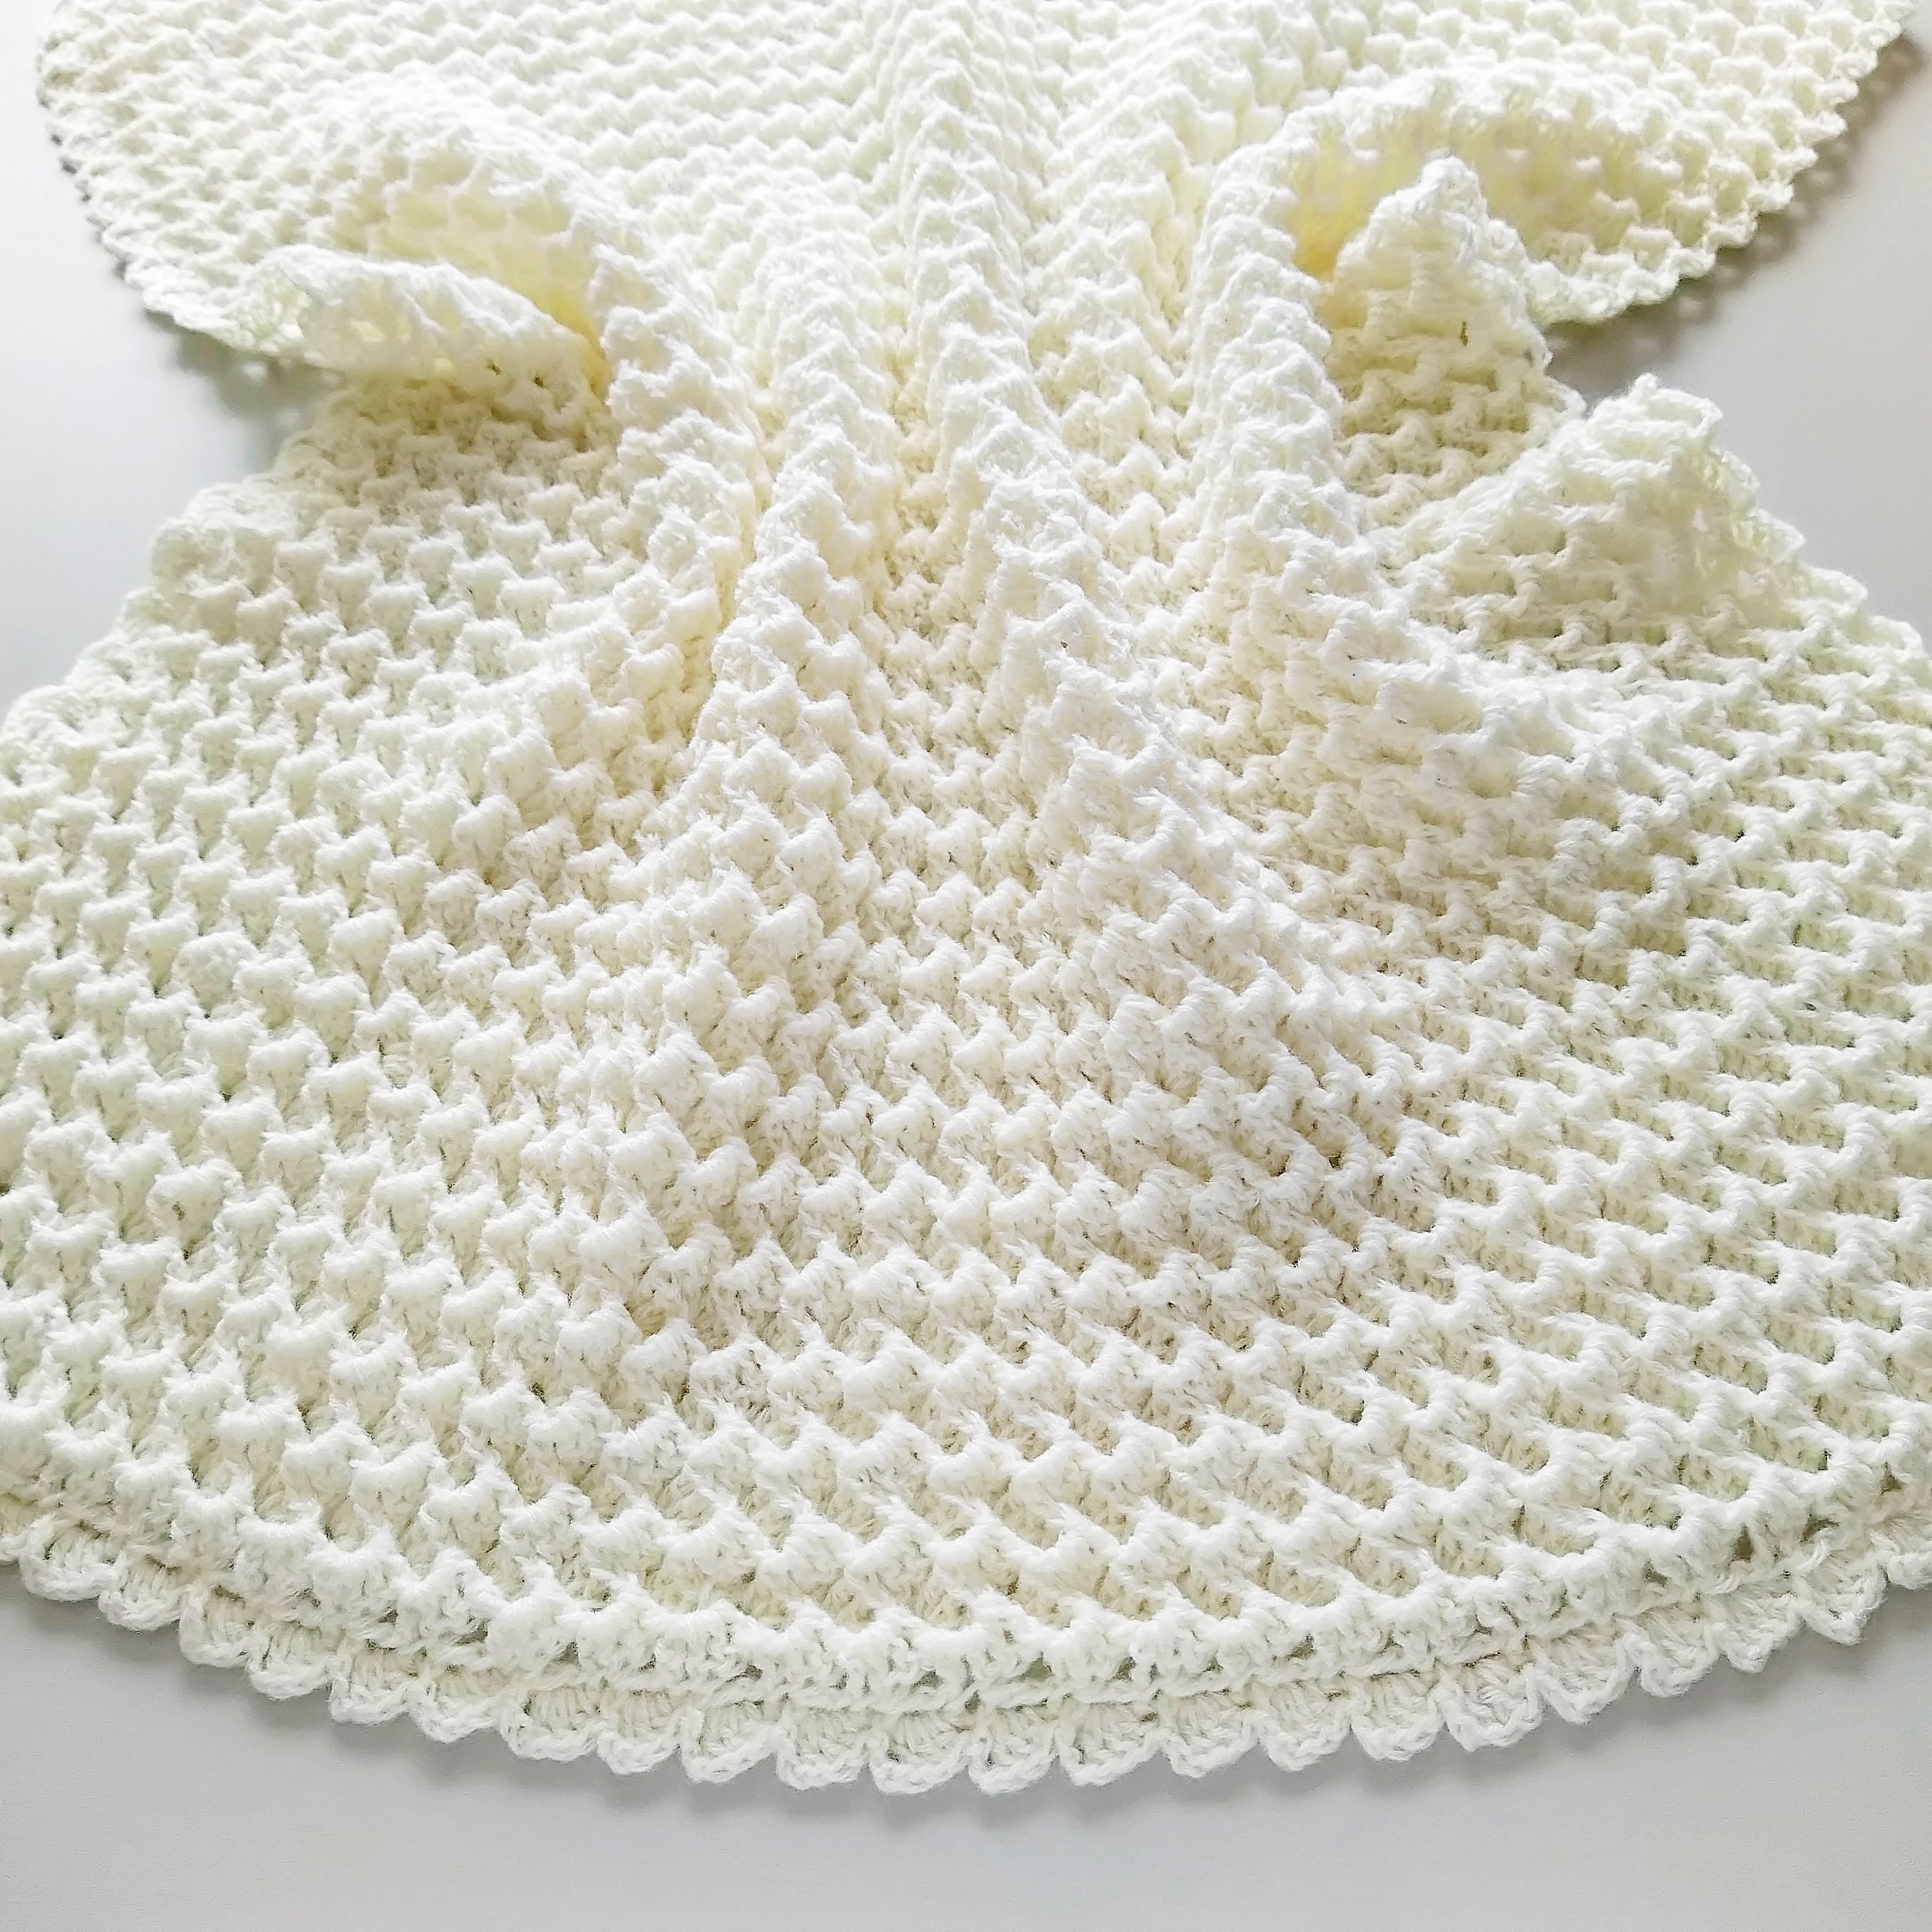 Crochet baby blanket patterns for beginners 5 sizes